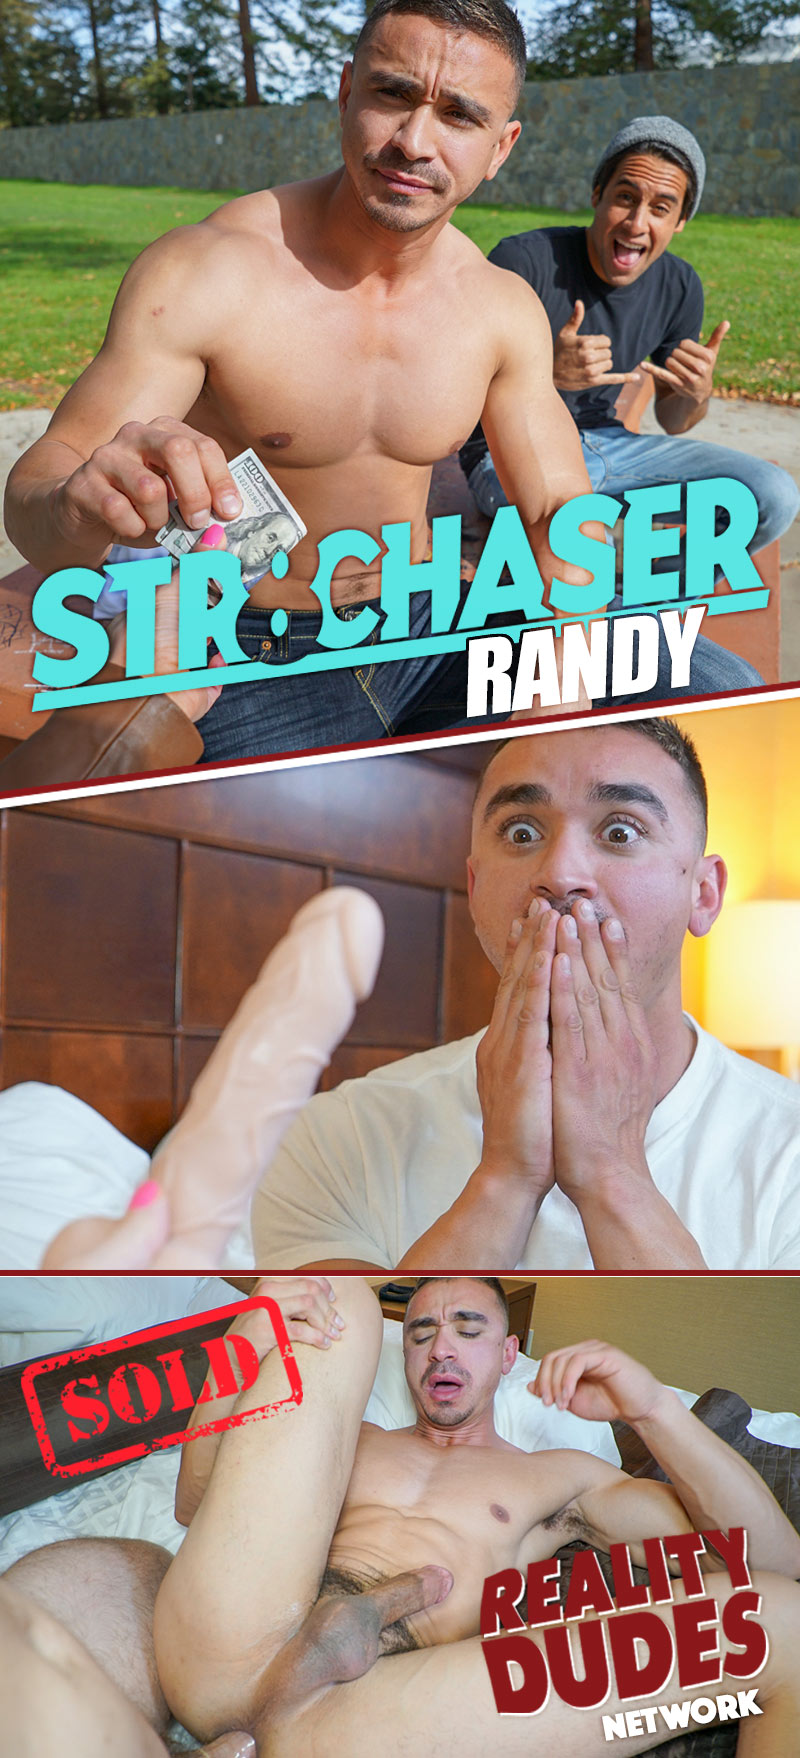 Randy dixon porn